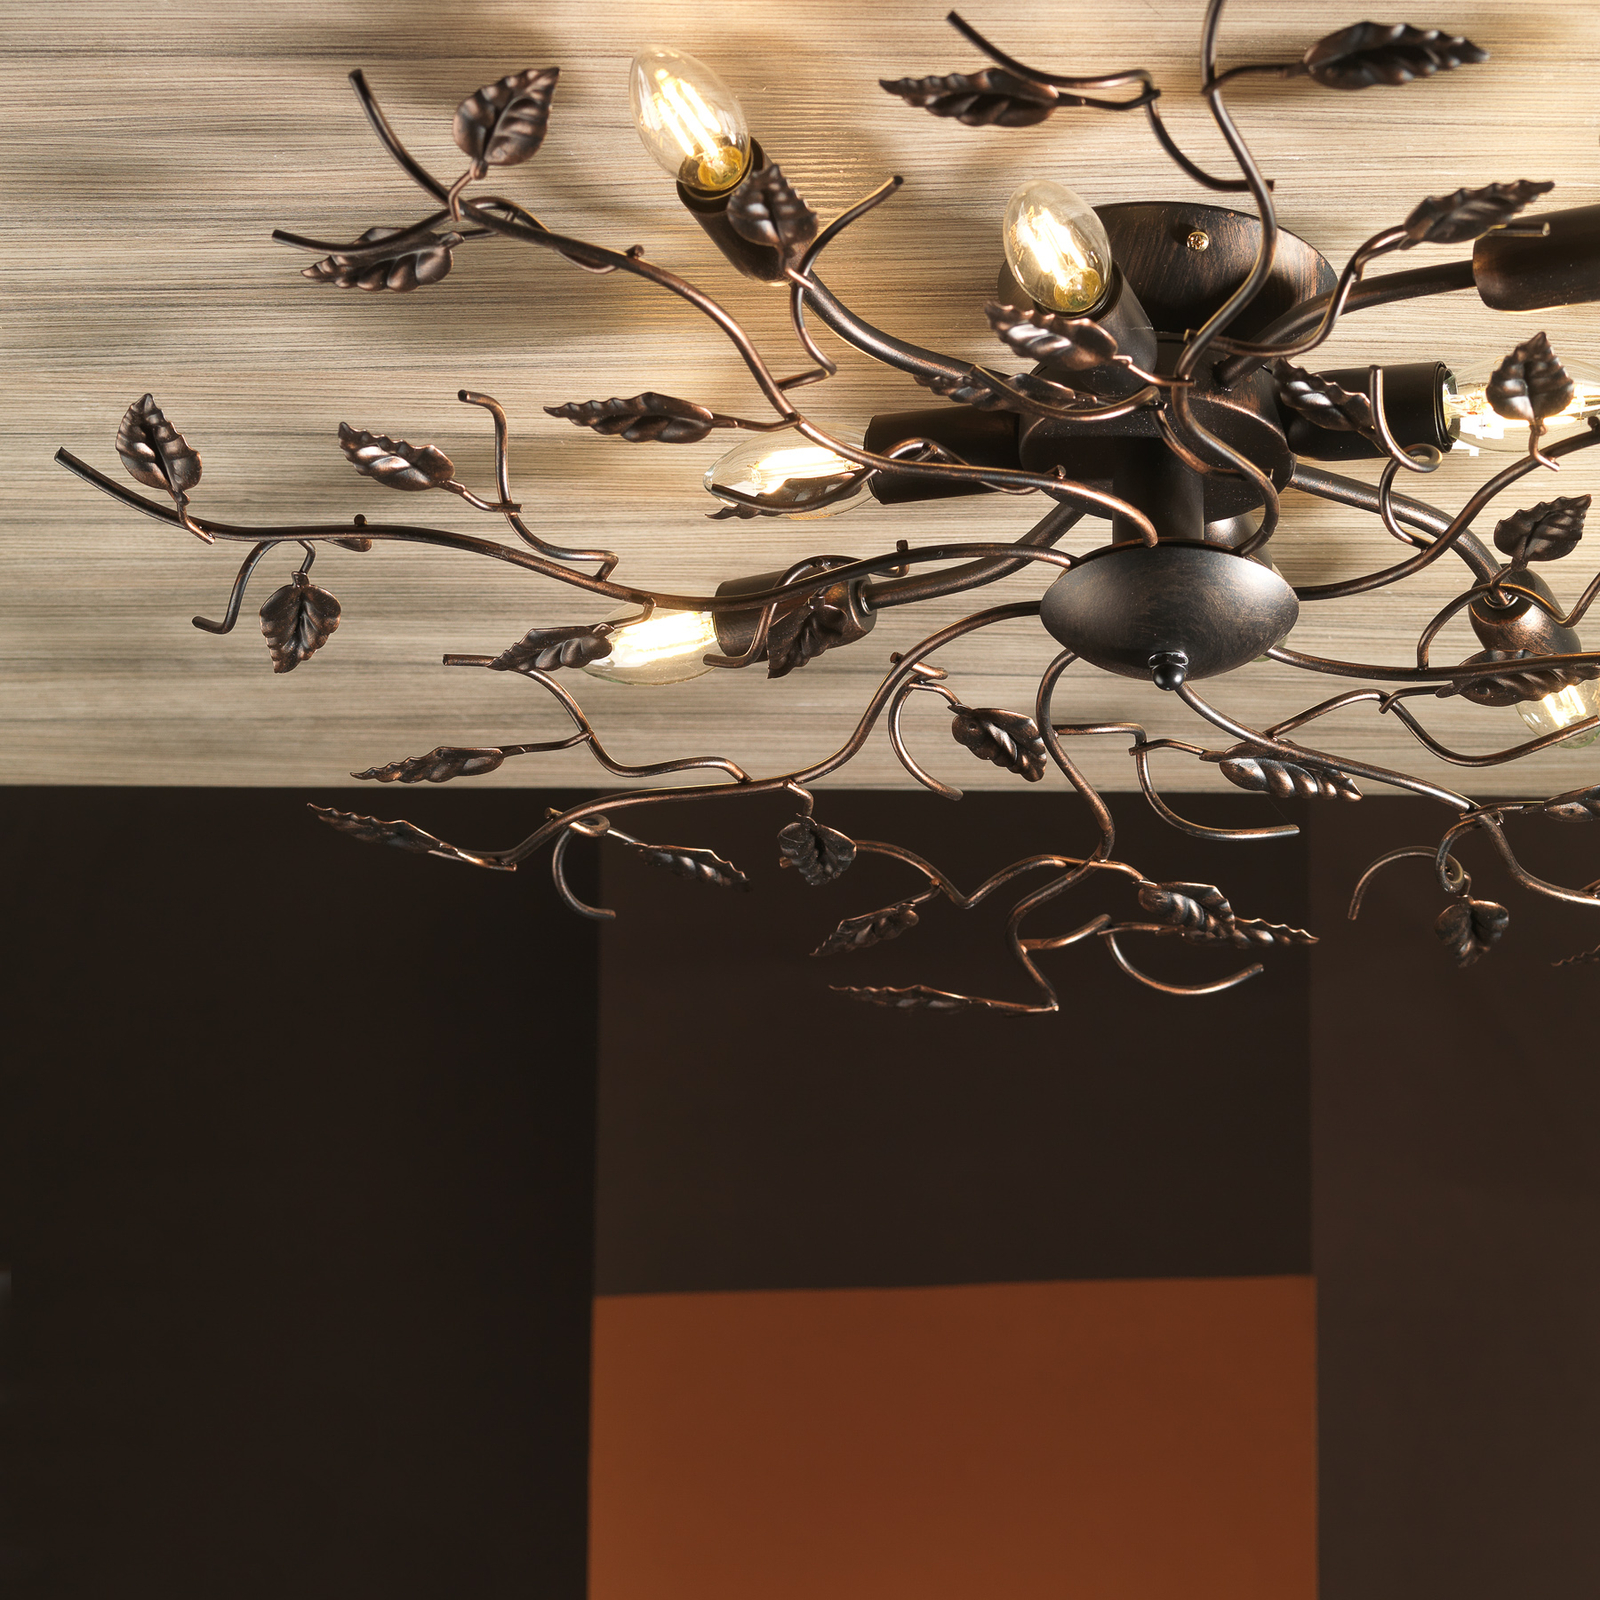 Cernecchio ceiling light, 8-bulb, bronze